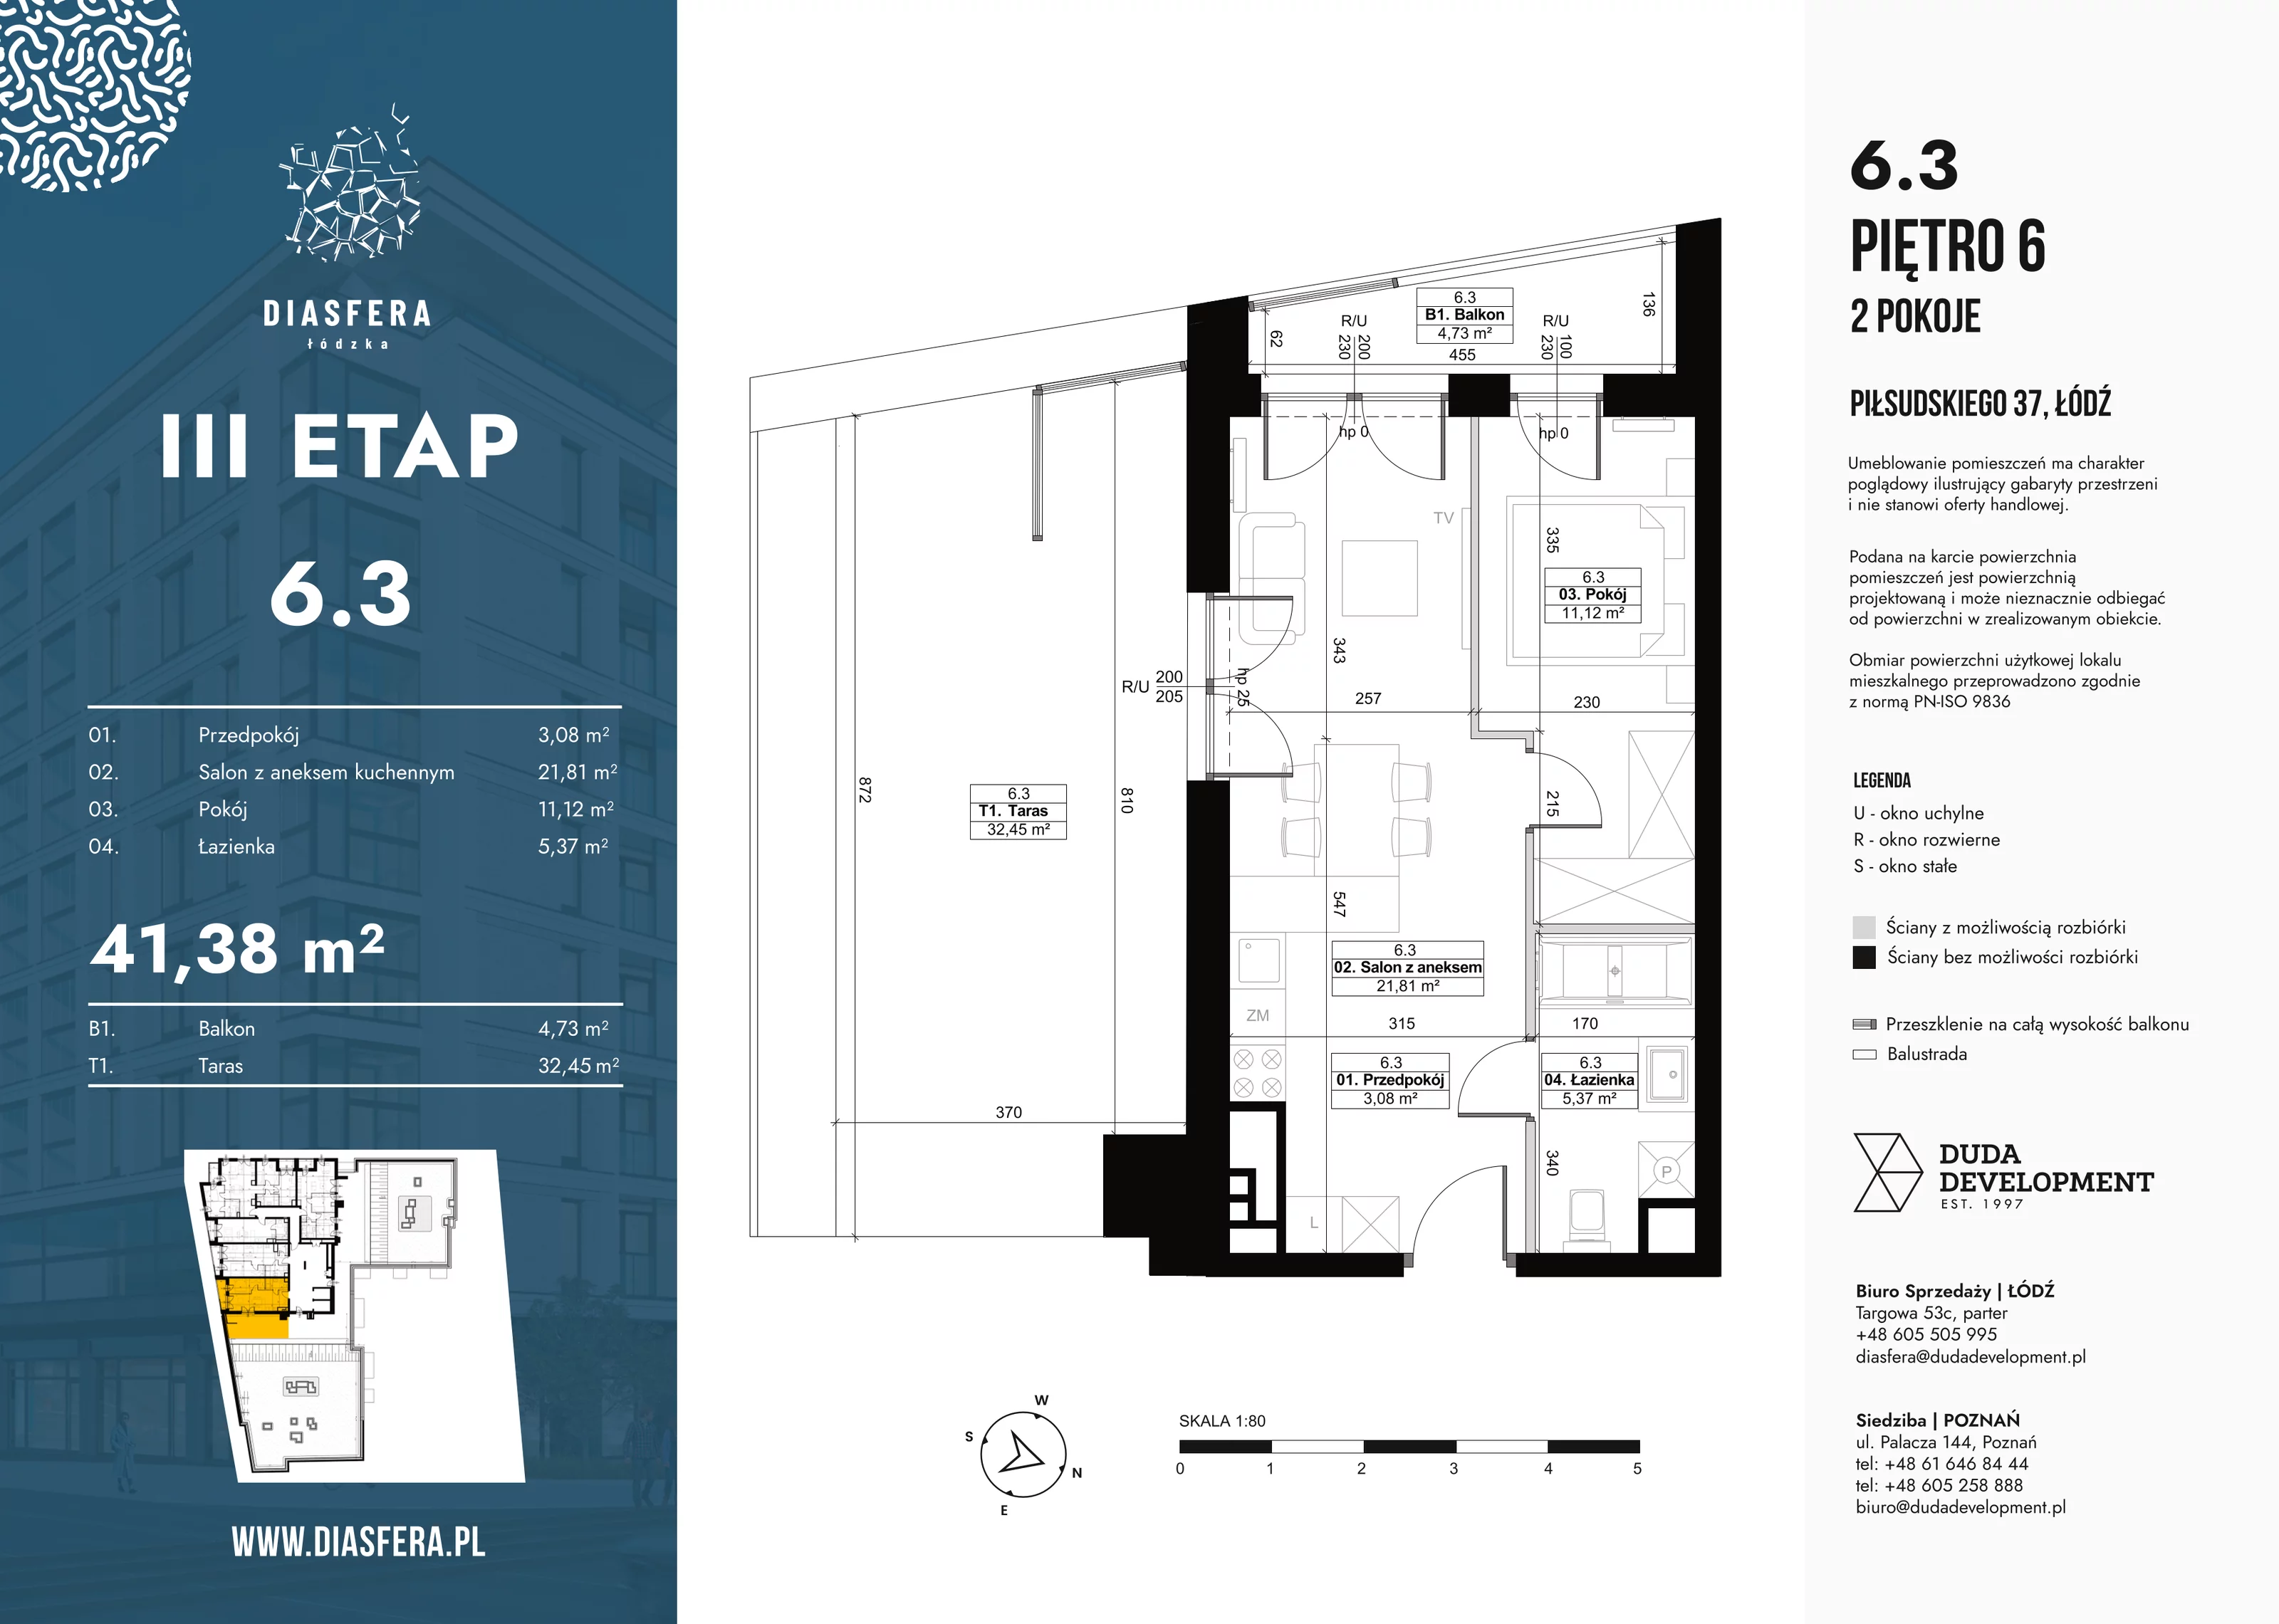 Mieszkanie 41,38 m², piętro 6, oferta nr 6_3, Diasfera III, Łódź, Śródmieście, al. Piłsudskiego 37